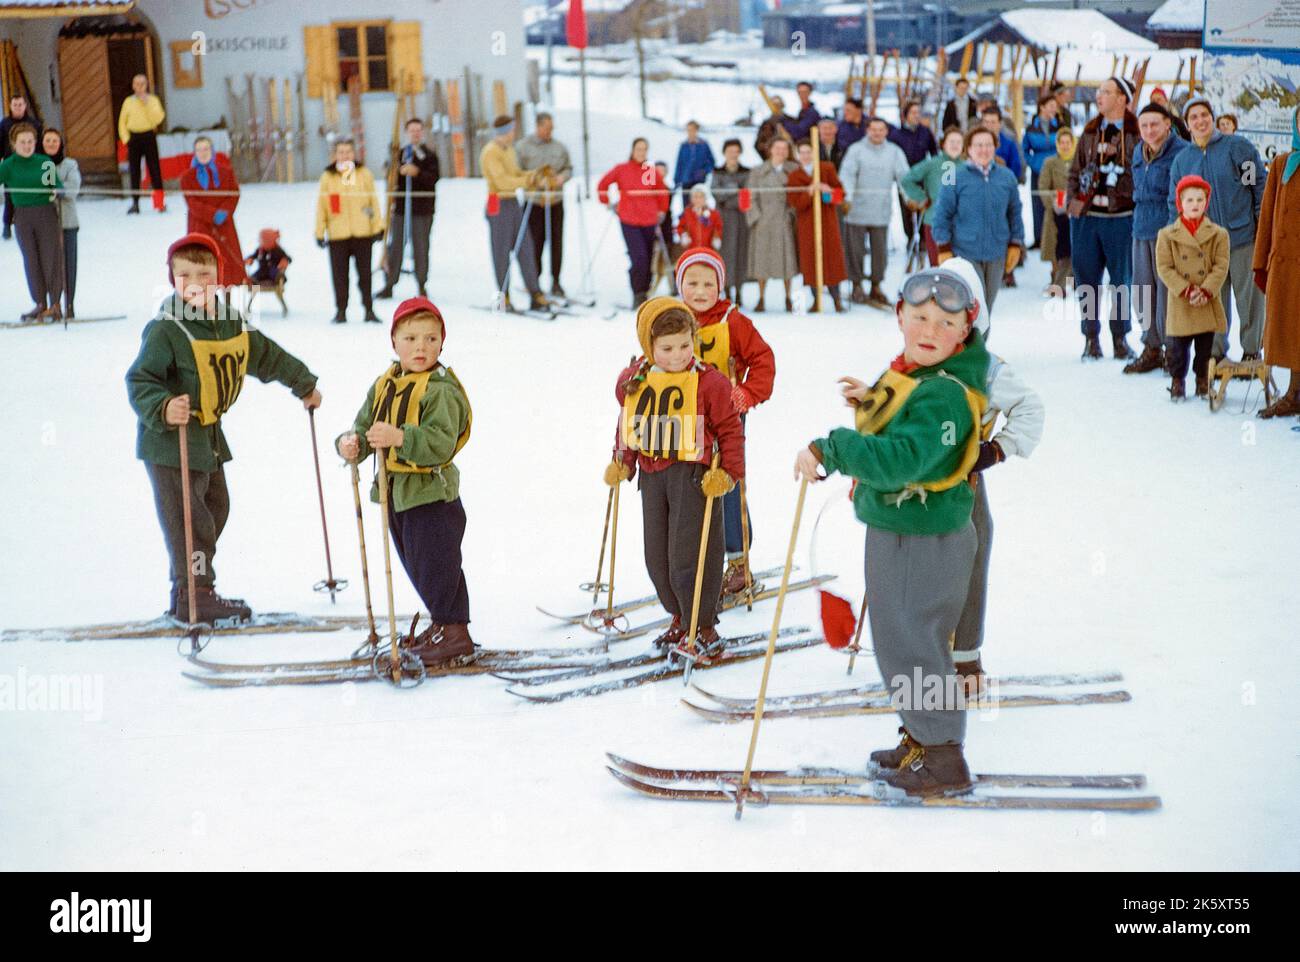 Grupo de jóvenes esquiadores, San Anton am Arlberg, Tirol, Austria, Colección Toni Frissell, enero de 1955 Foto de stock